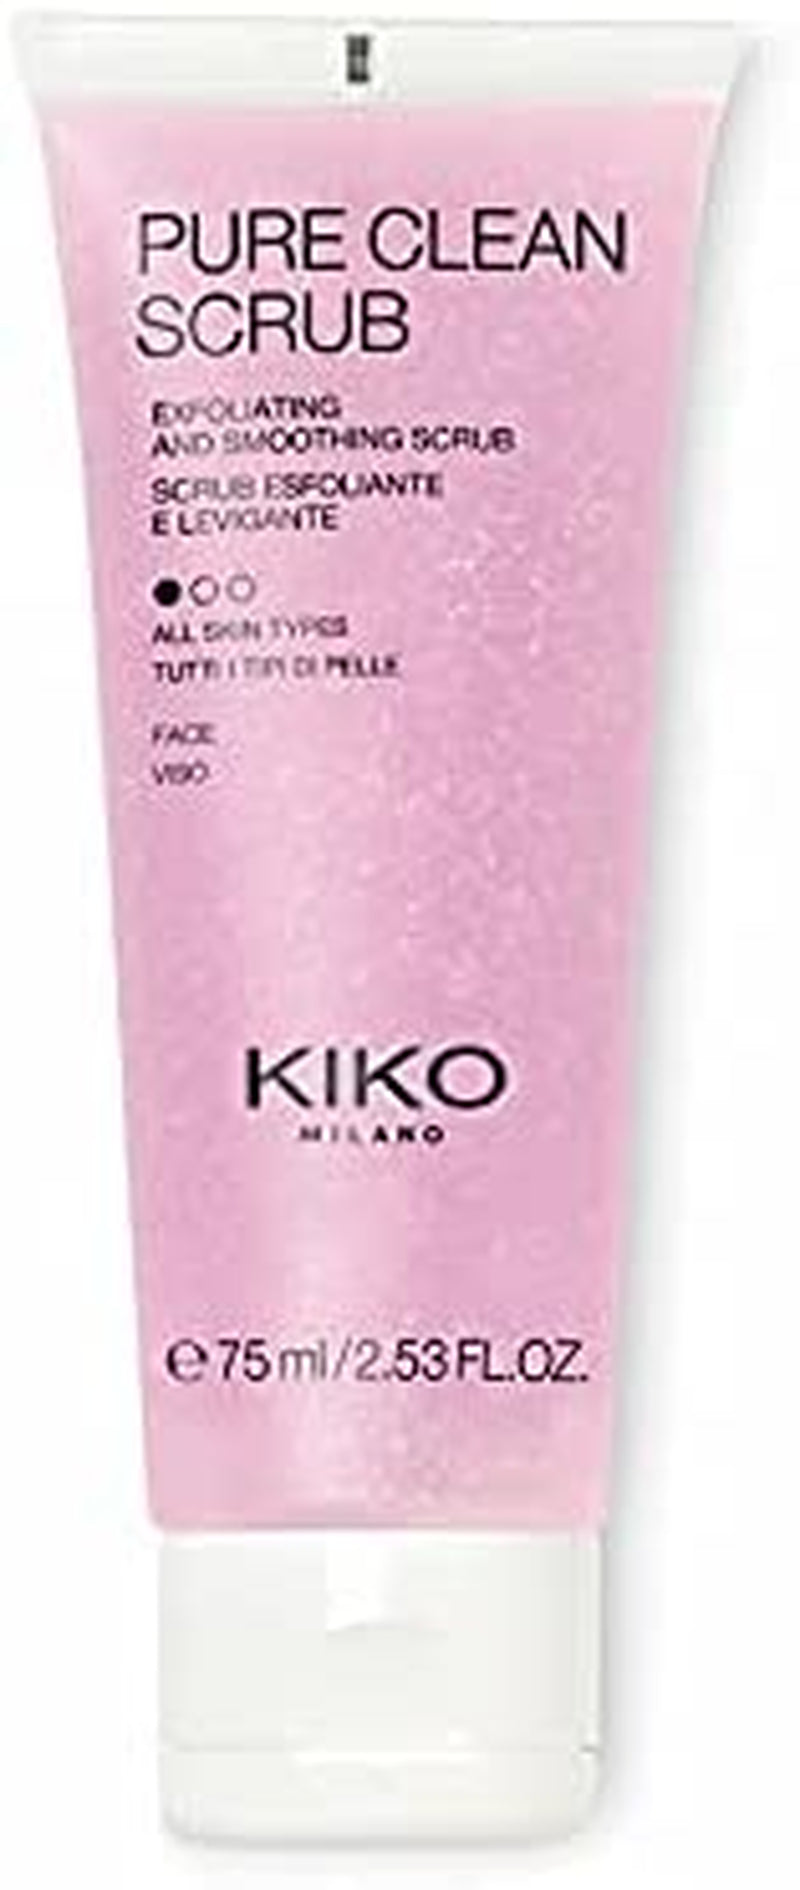 KIKO Milano Pure Clean Scrub | Exfoliating and Smoothing Scrub